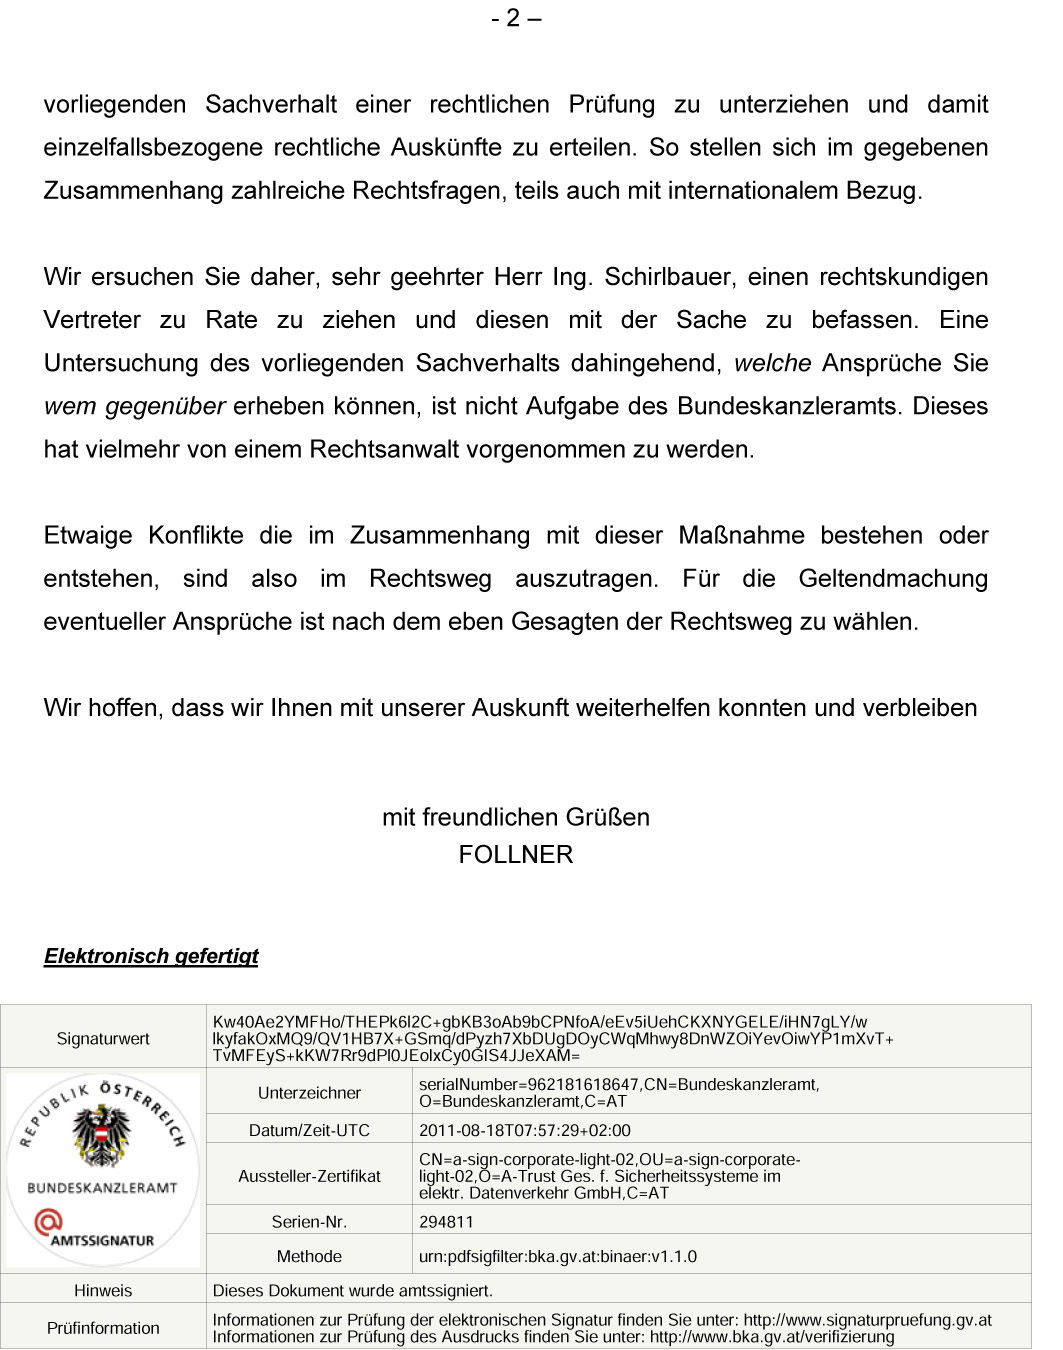 Bundeskanzleramt Österreich, Bundeskanzleramt, Bürgerinnenservice, Bürgerservice, Leiter, MR Dr. Ludwig Follner, Ballhausplatz 2, 1014 Wien